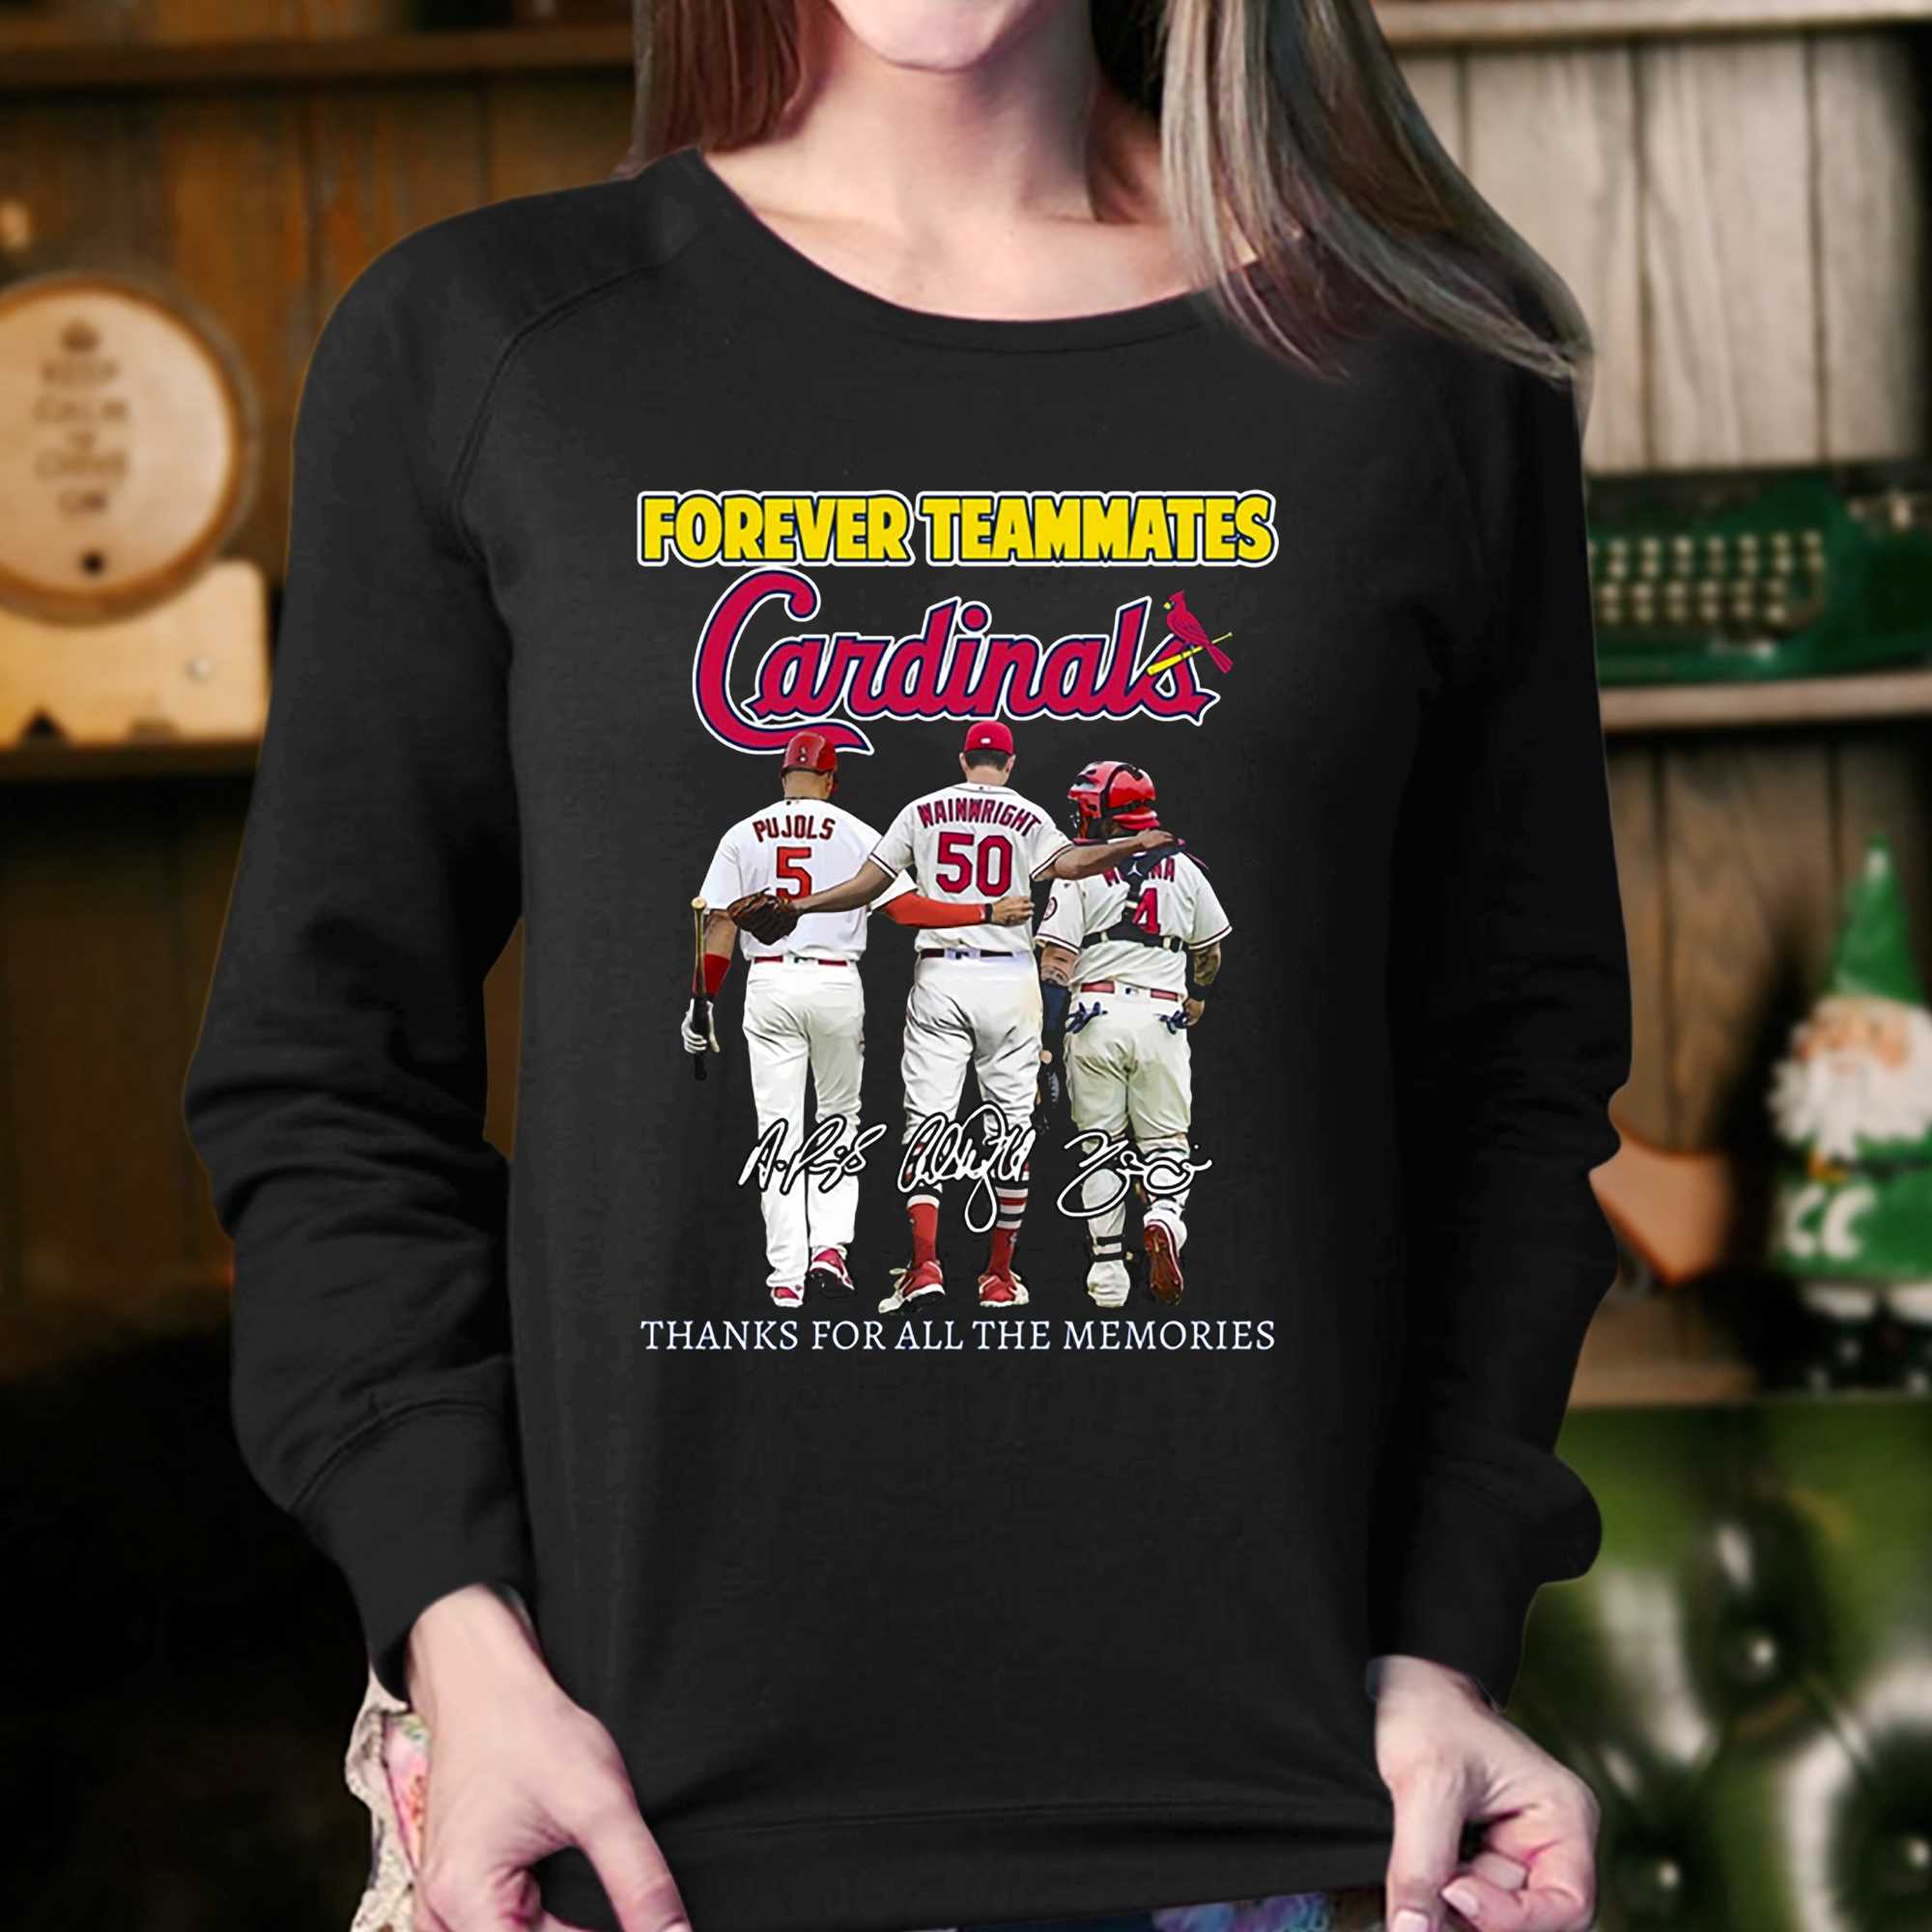 St. Louis Cardinals T-Shirt